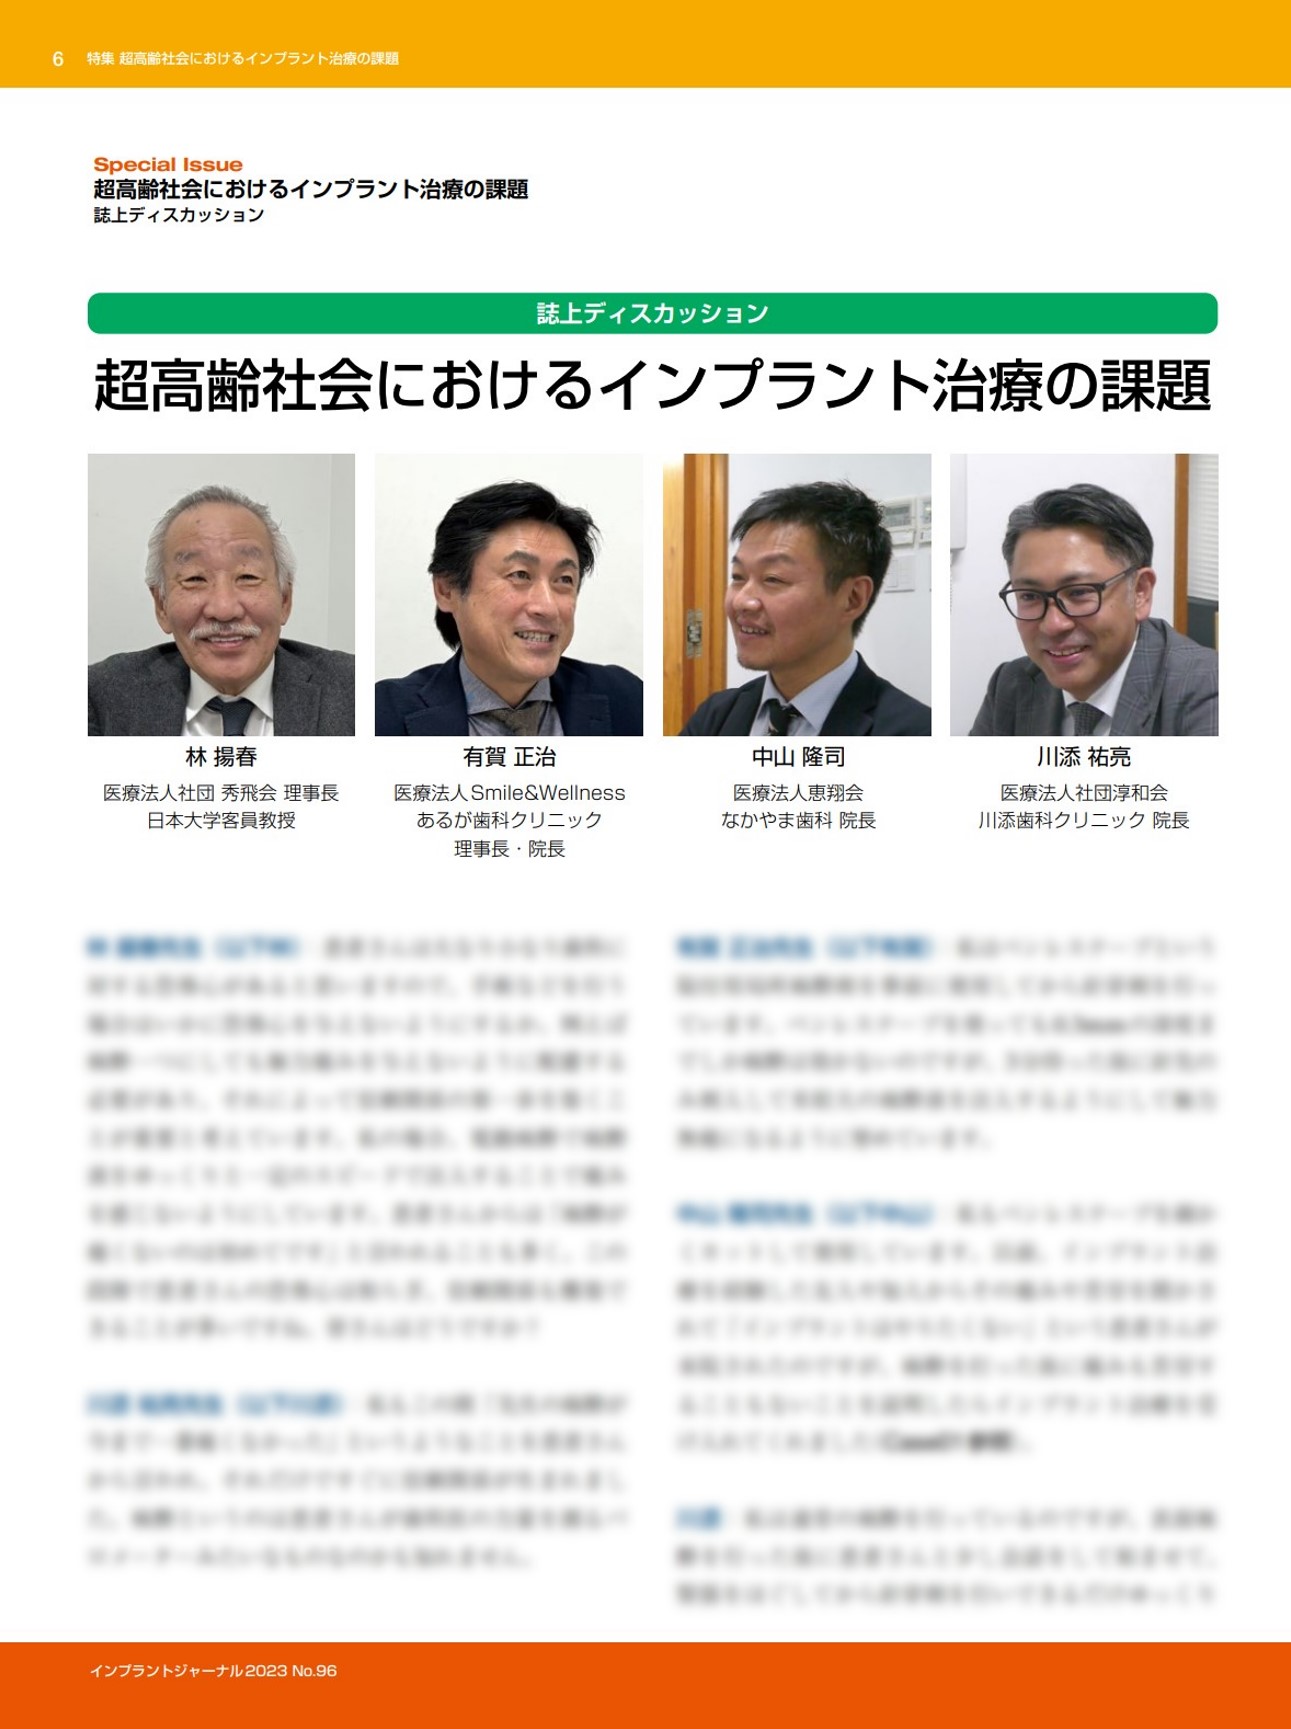 インプラント専門誌の特集に、院長中山が3名の先生方とともに登場しています